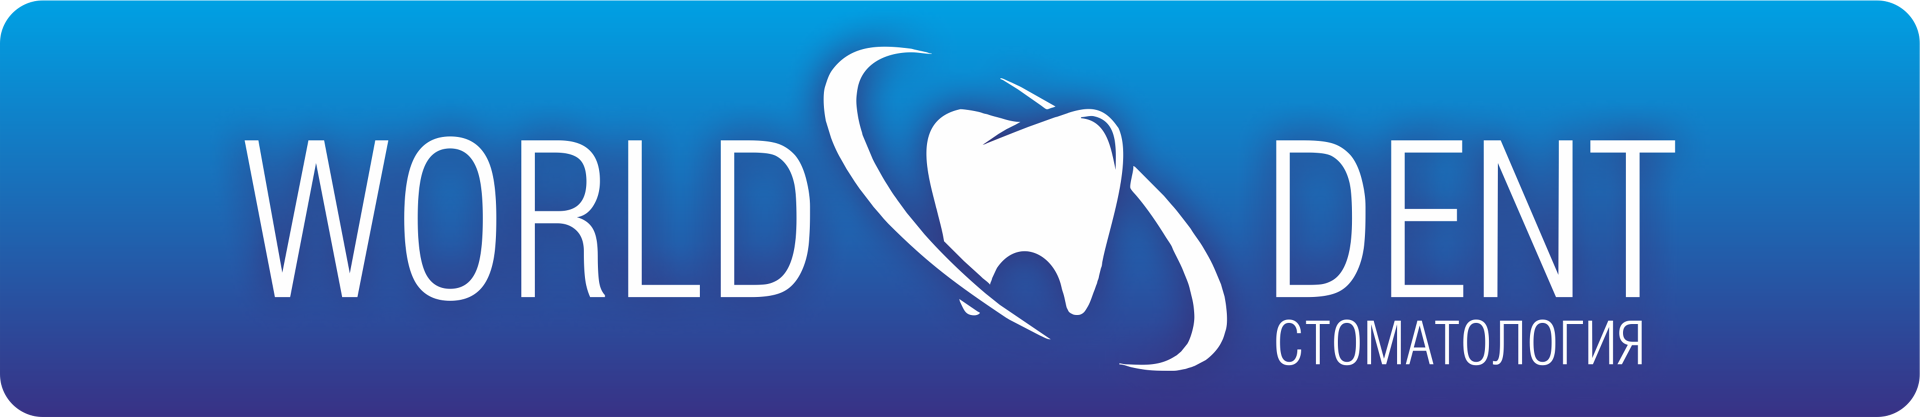 Сеть стоматологических клиник World Dent